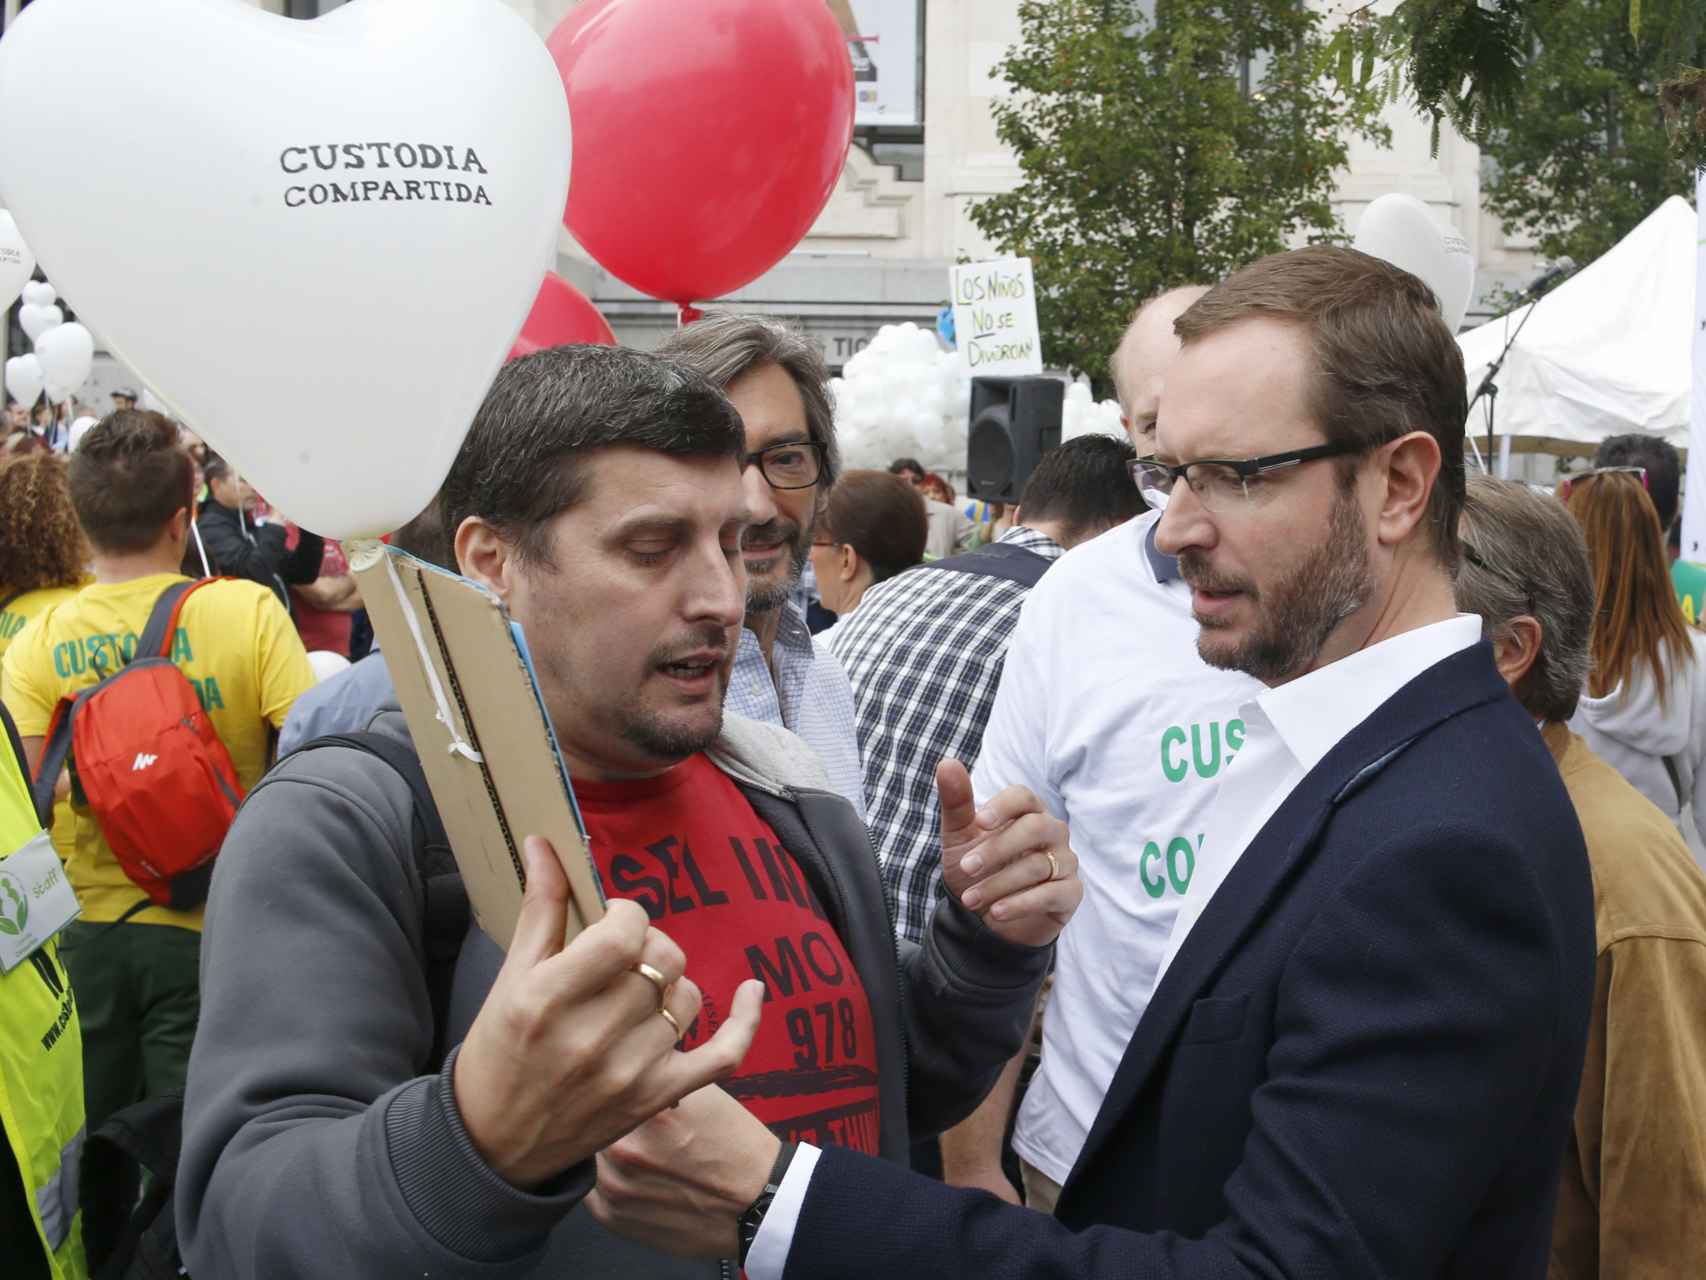 Maroto durante la concentración Custodia compartida derechos de los hijos en octubre de 2015.